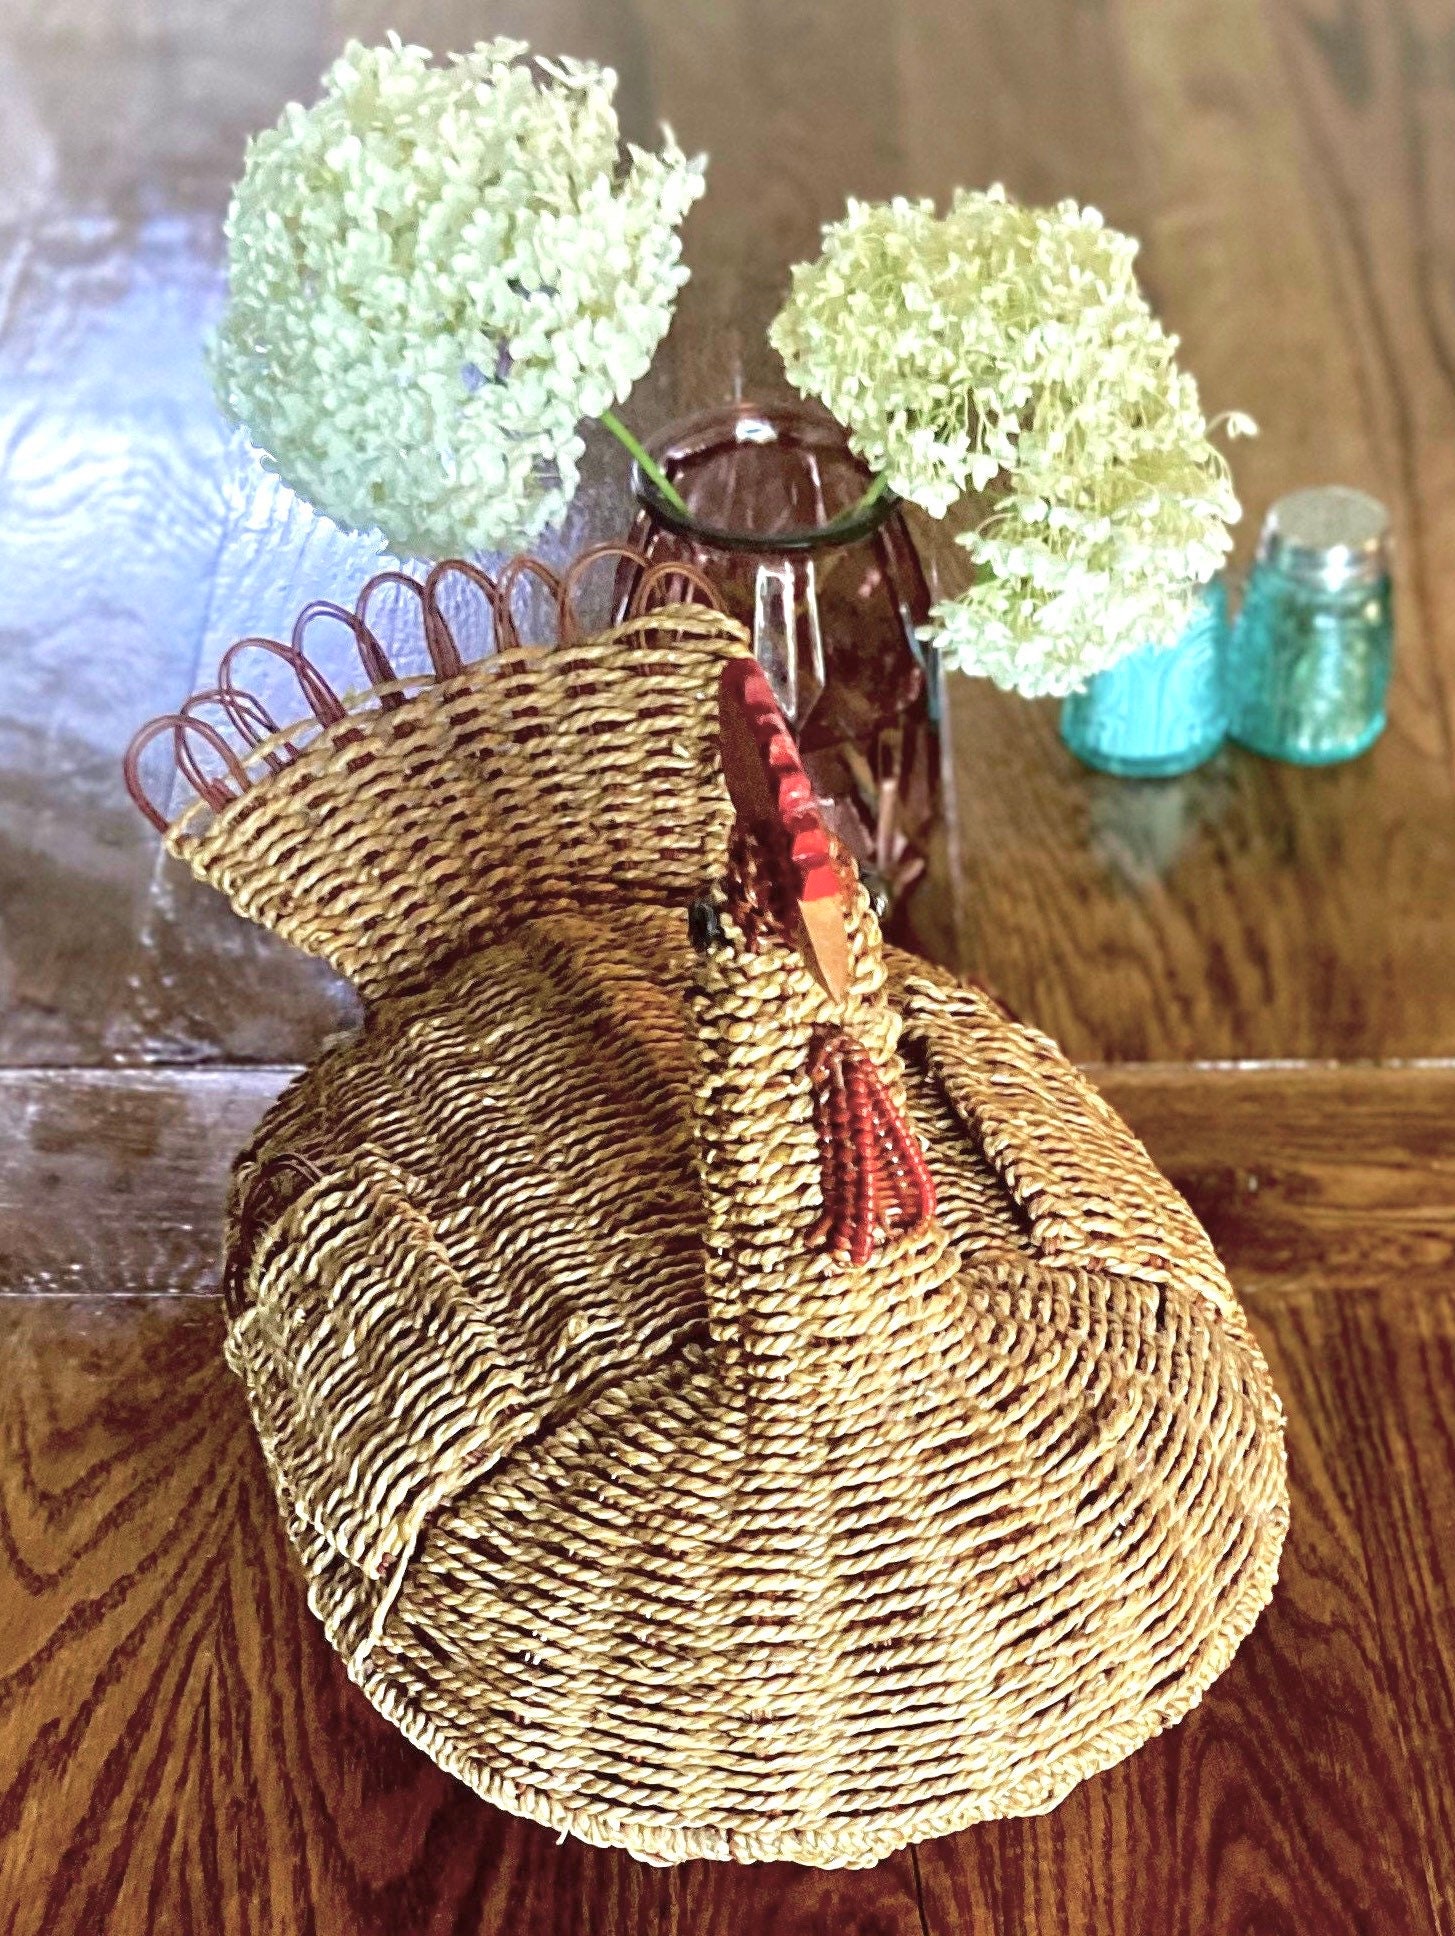 Emmaus Bradford - Vintage brown chicken in a basket ceramic egg